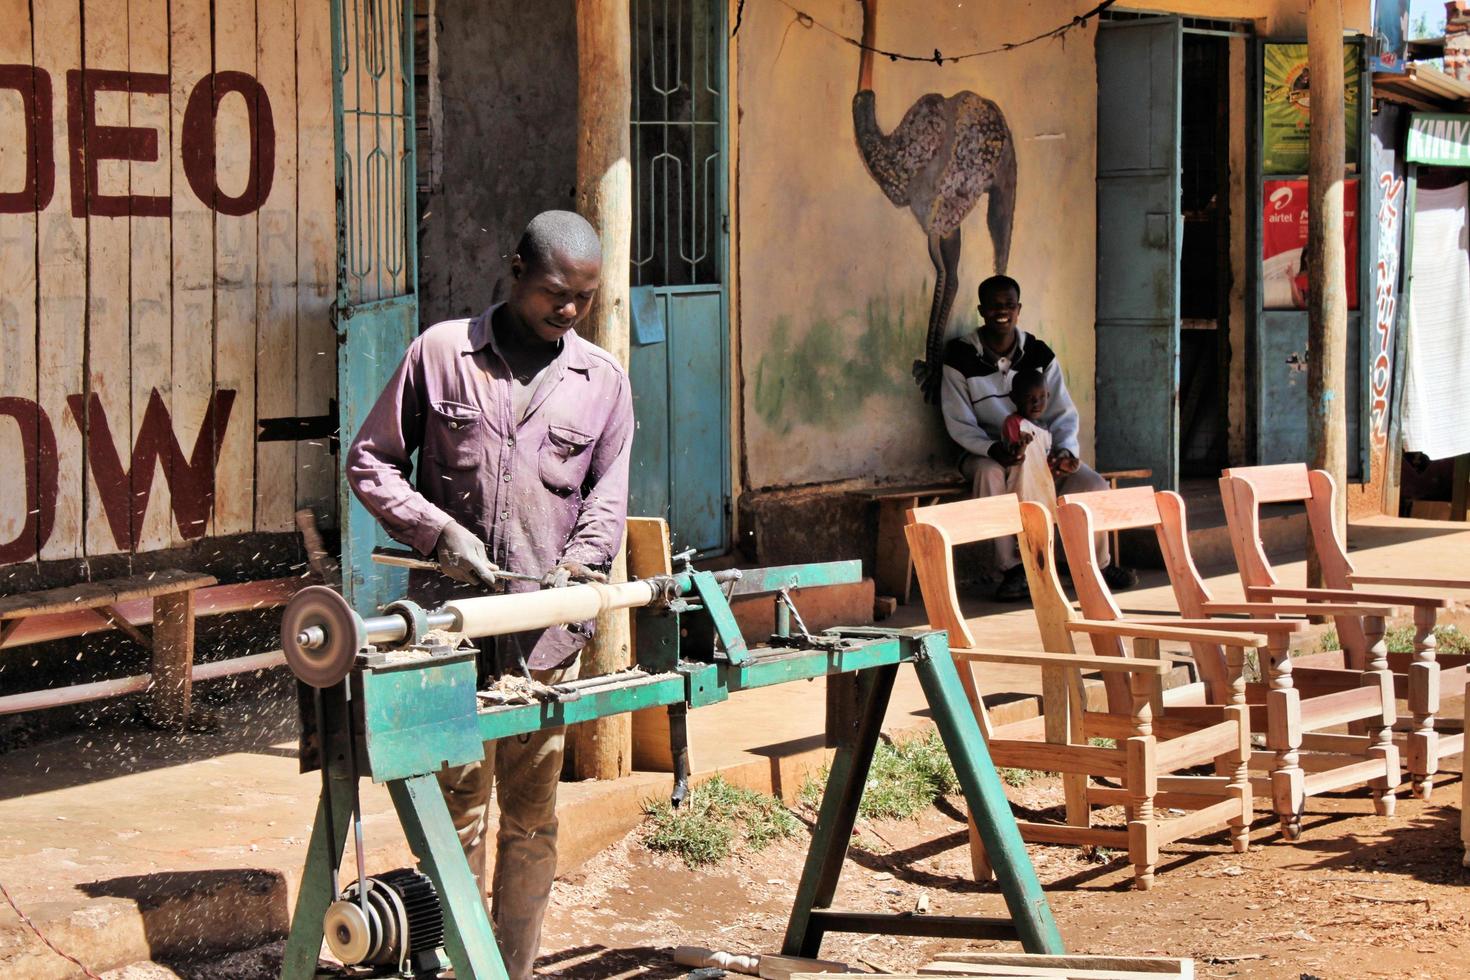 kimilili i kenya i februari 2011. en se av människor försäljning Produkter i kenya foto